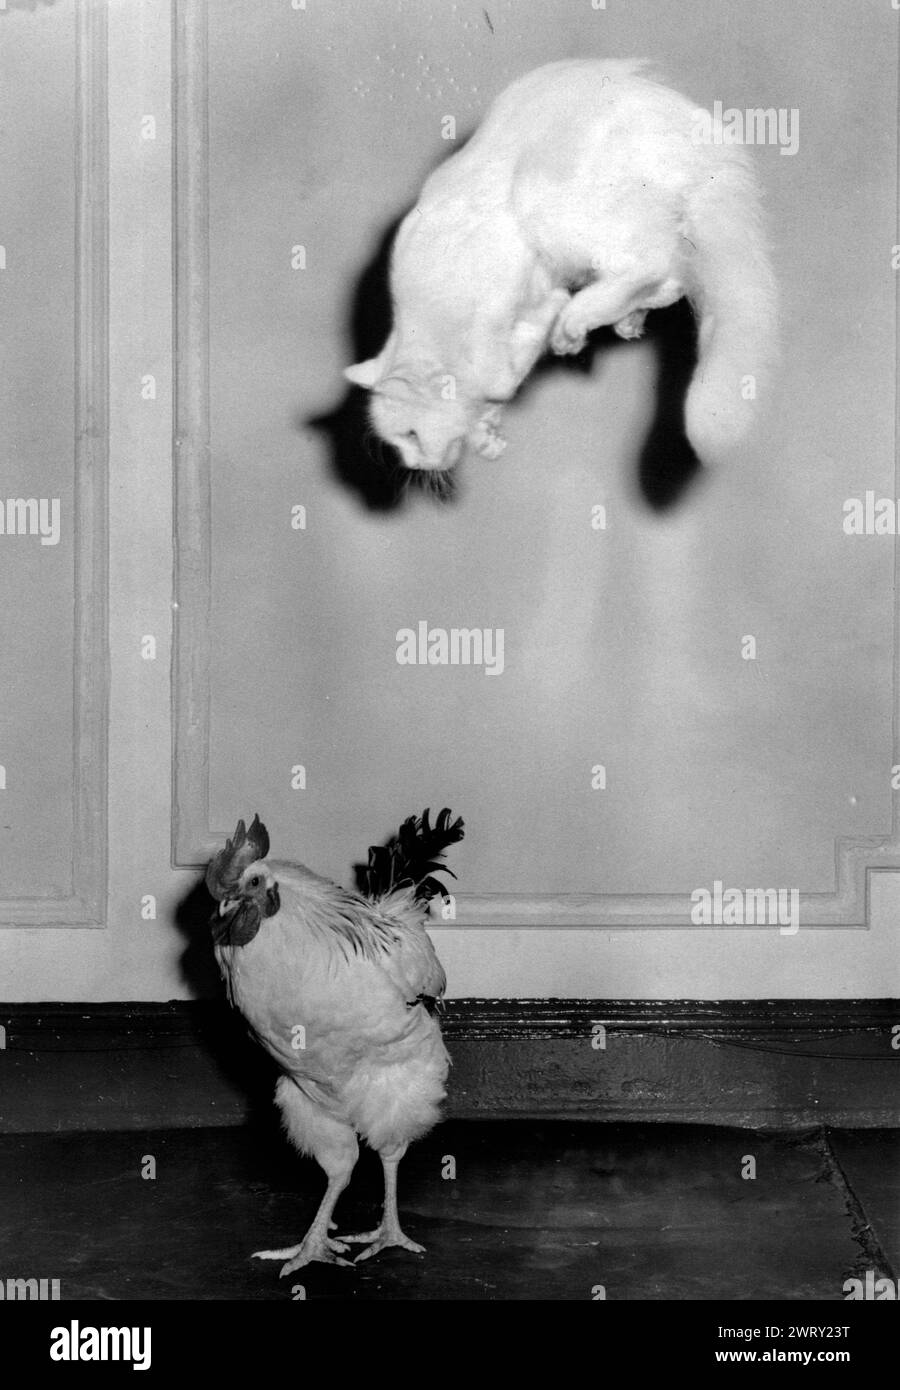 1950: Londra, Inghilterra, Regno Unito: Il gatto bianco salta in aria sopra l'ignaro pollo. (Immagine di credito: © Keystone Press Agency/ZUMA Press Wire). SOLO PER USO EDITORIALE! Non per USO commerciale! Foto Stock